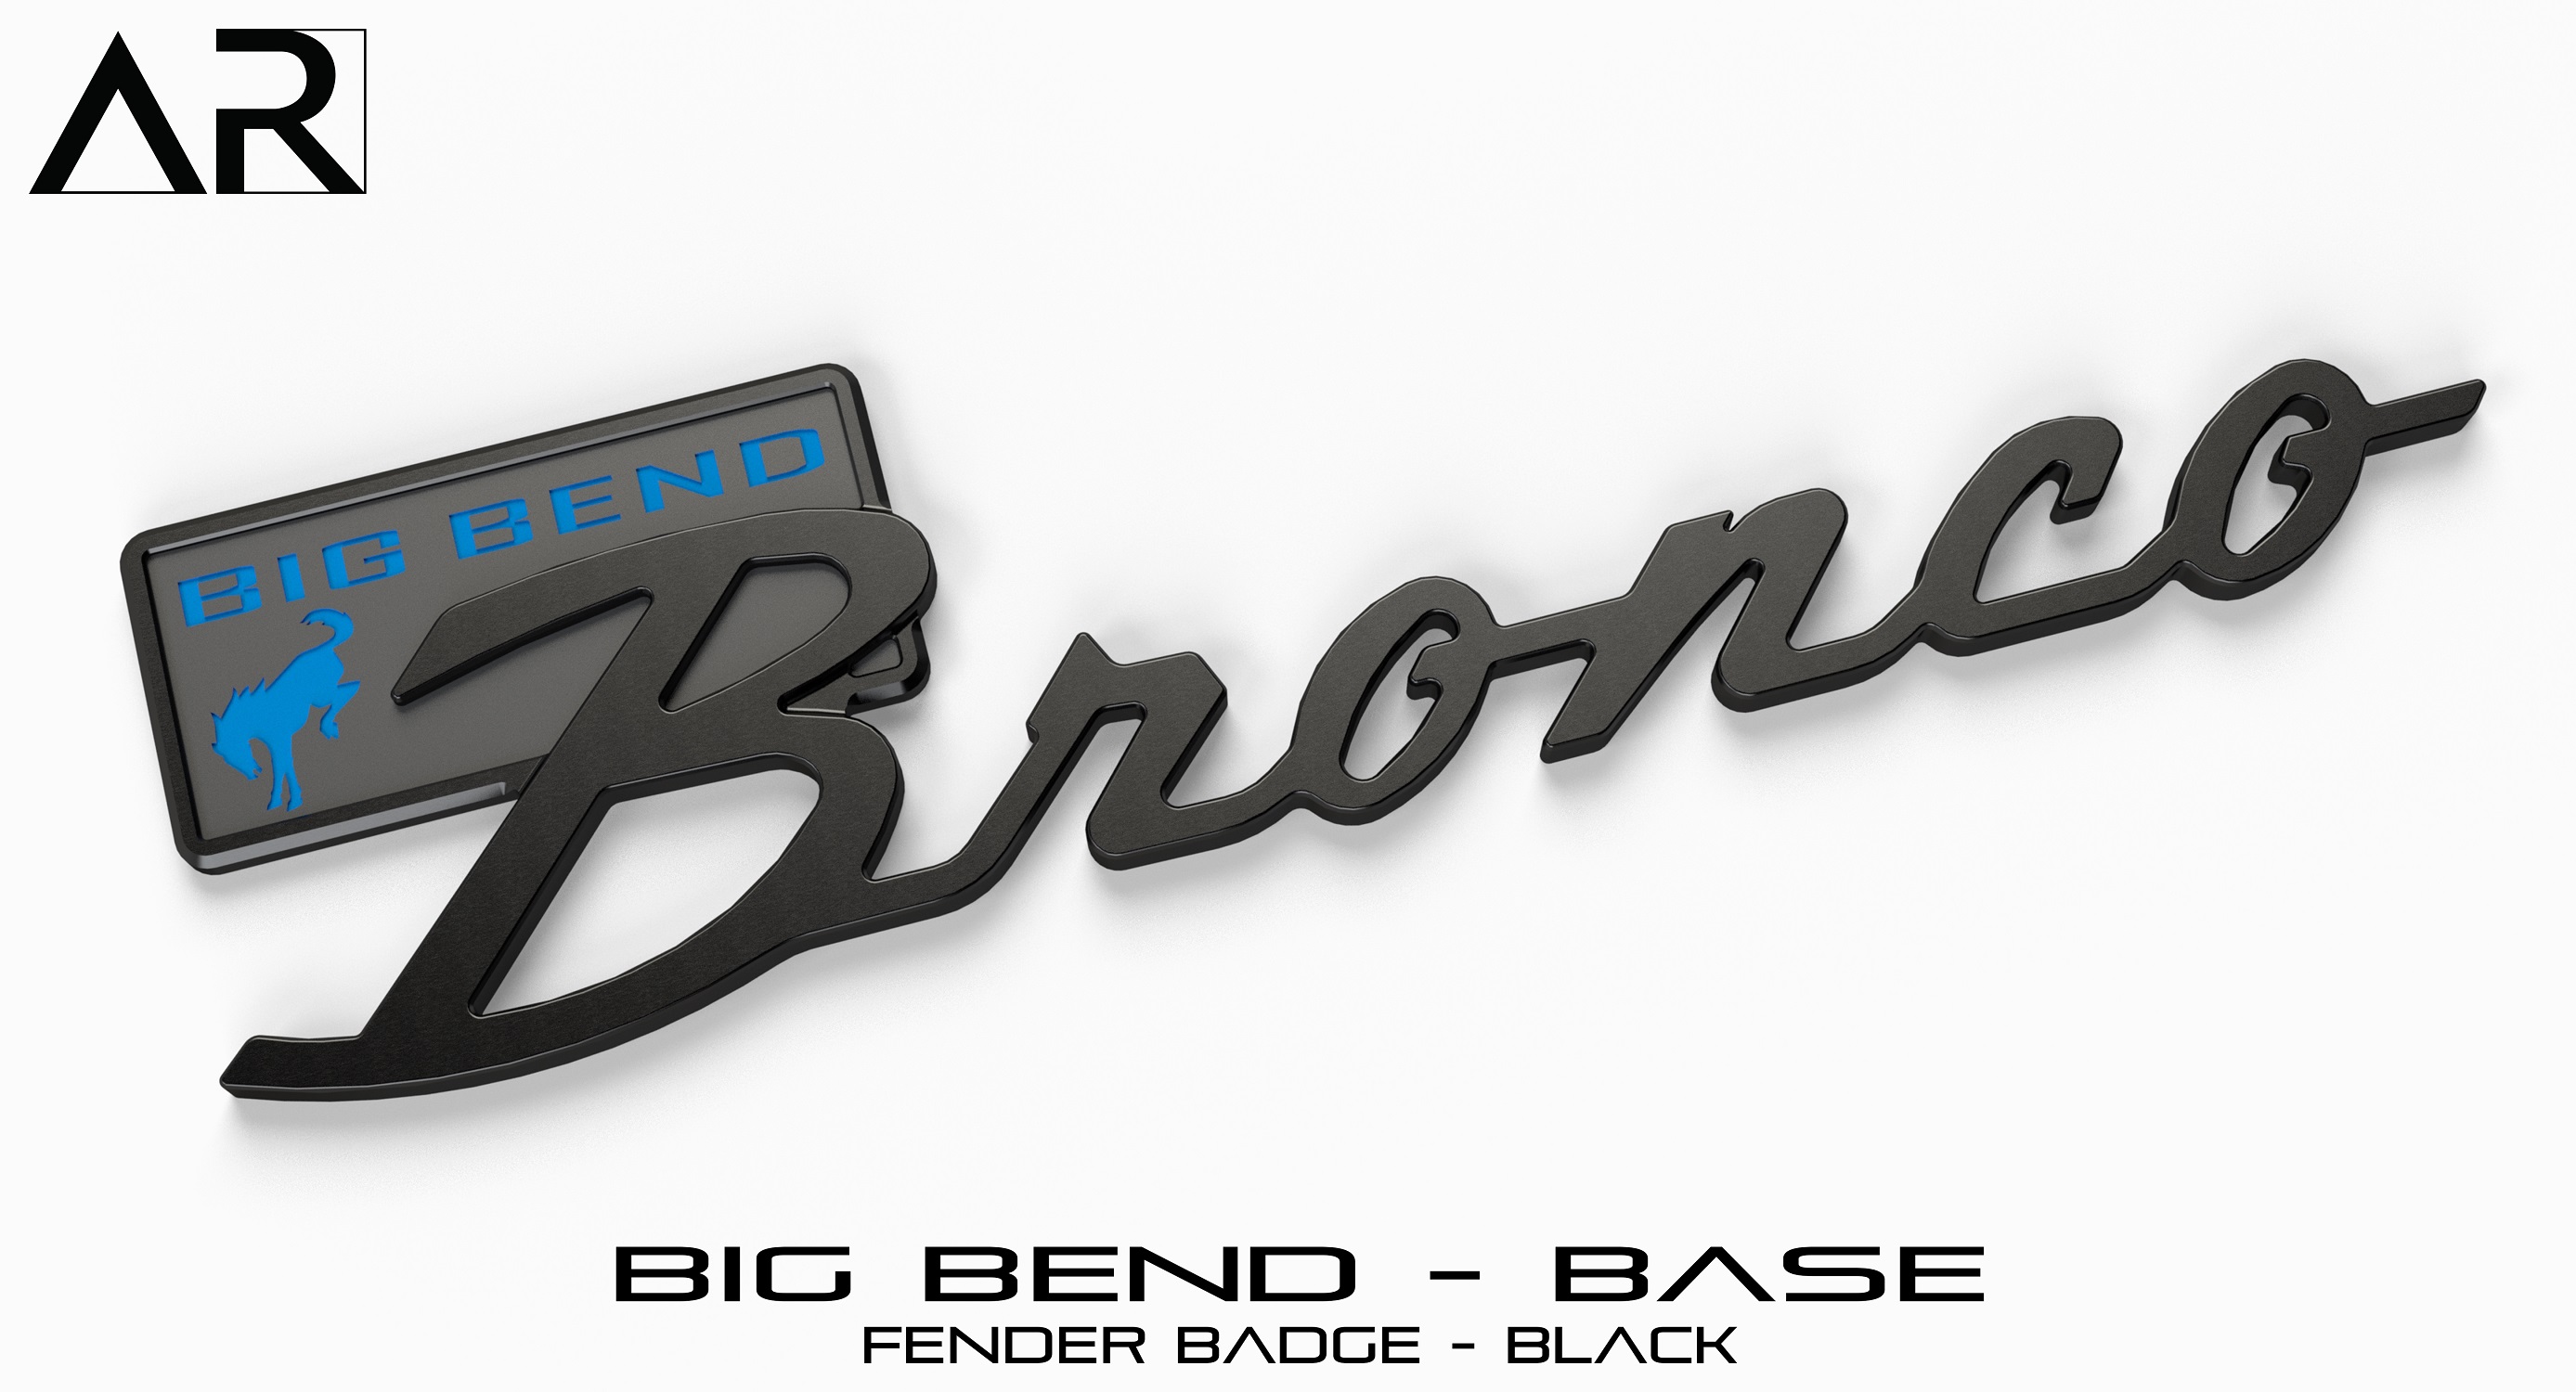 Ford Bronco AR | BRONCO CLASSIC DNA Fender Badge 1601007_B  - Fender Badge  - Big Bend Base - Black